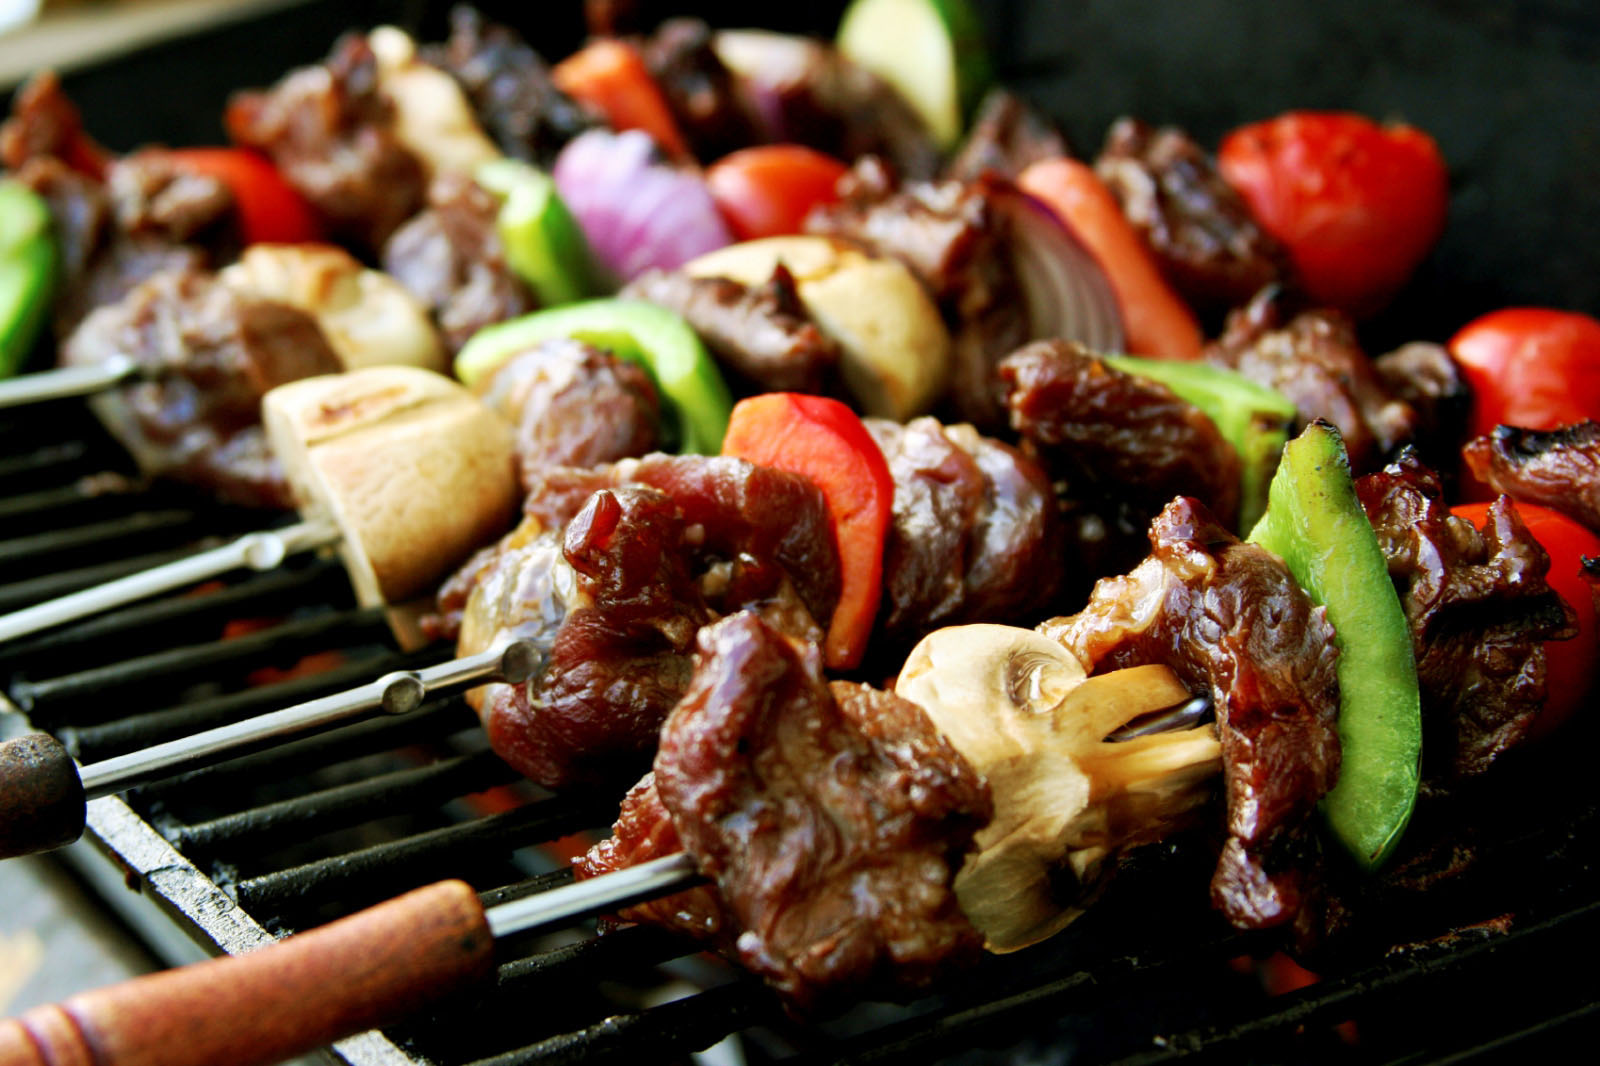 Un pranzo da sultano - barbecue in Turchia